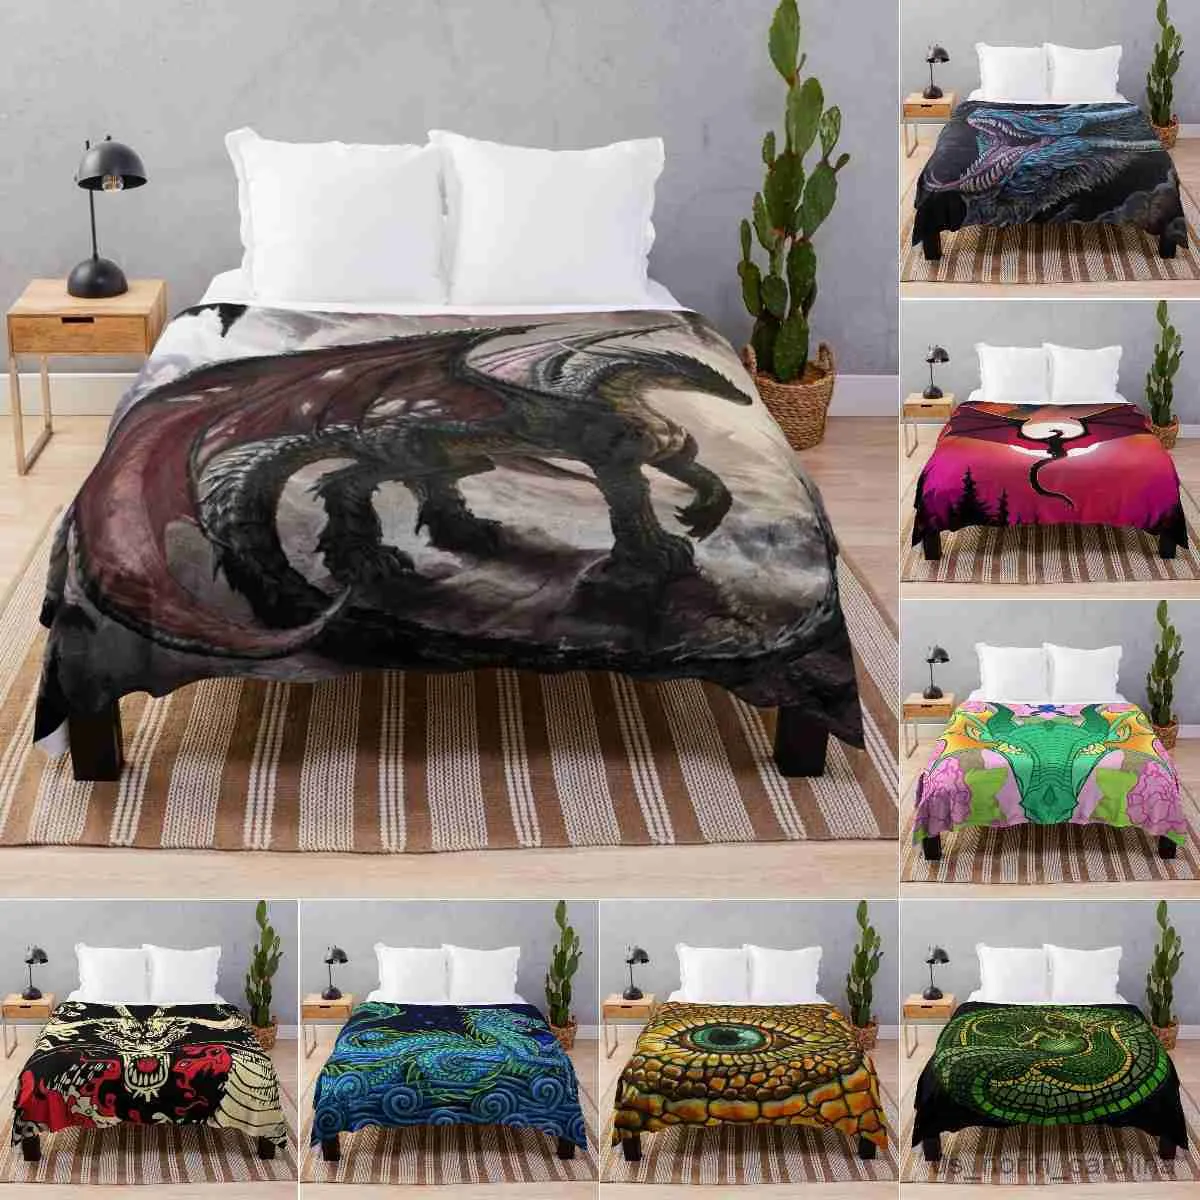 Одеяло Дракон Бросок одеяло для постельного дивана диван легкий туристический поход.